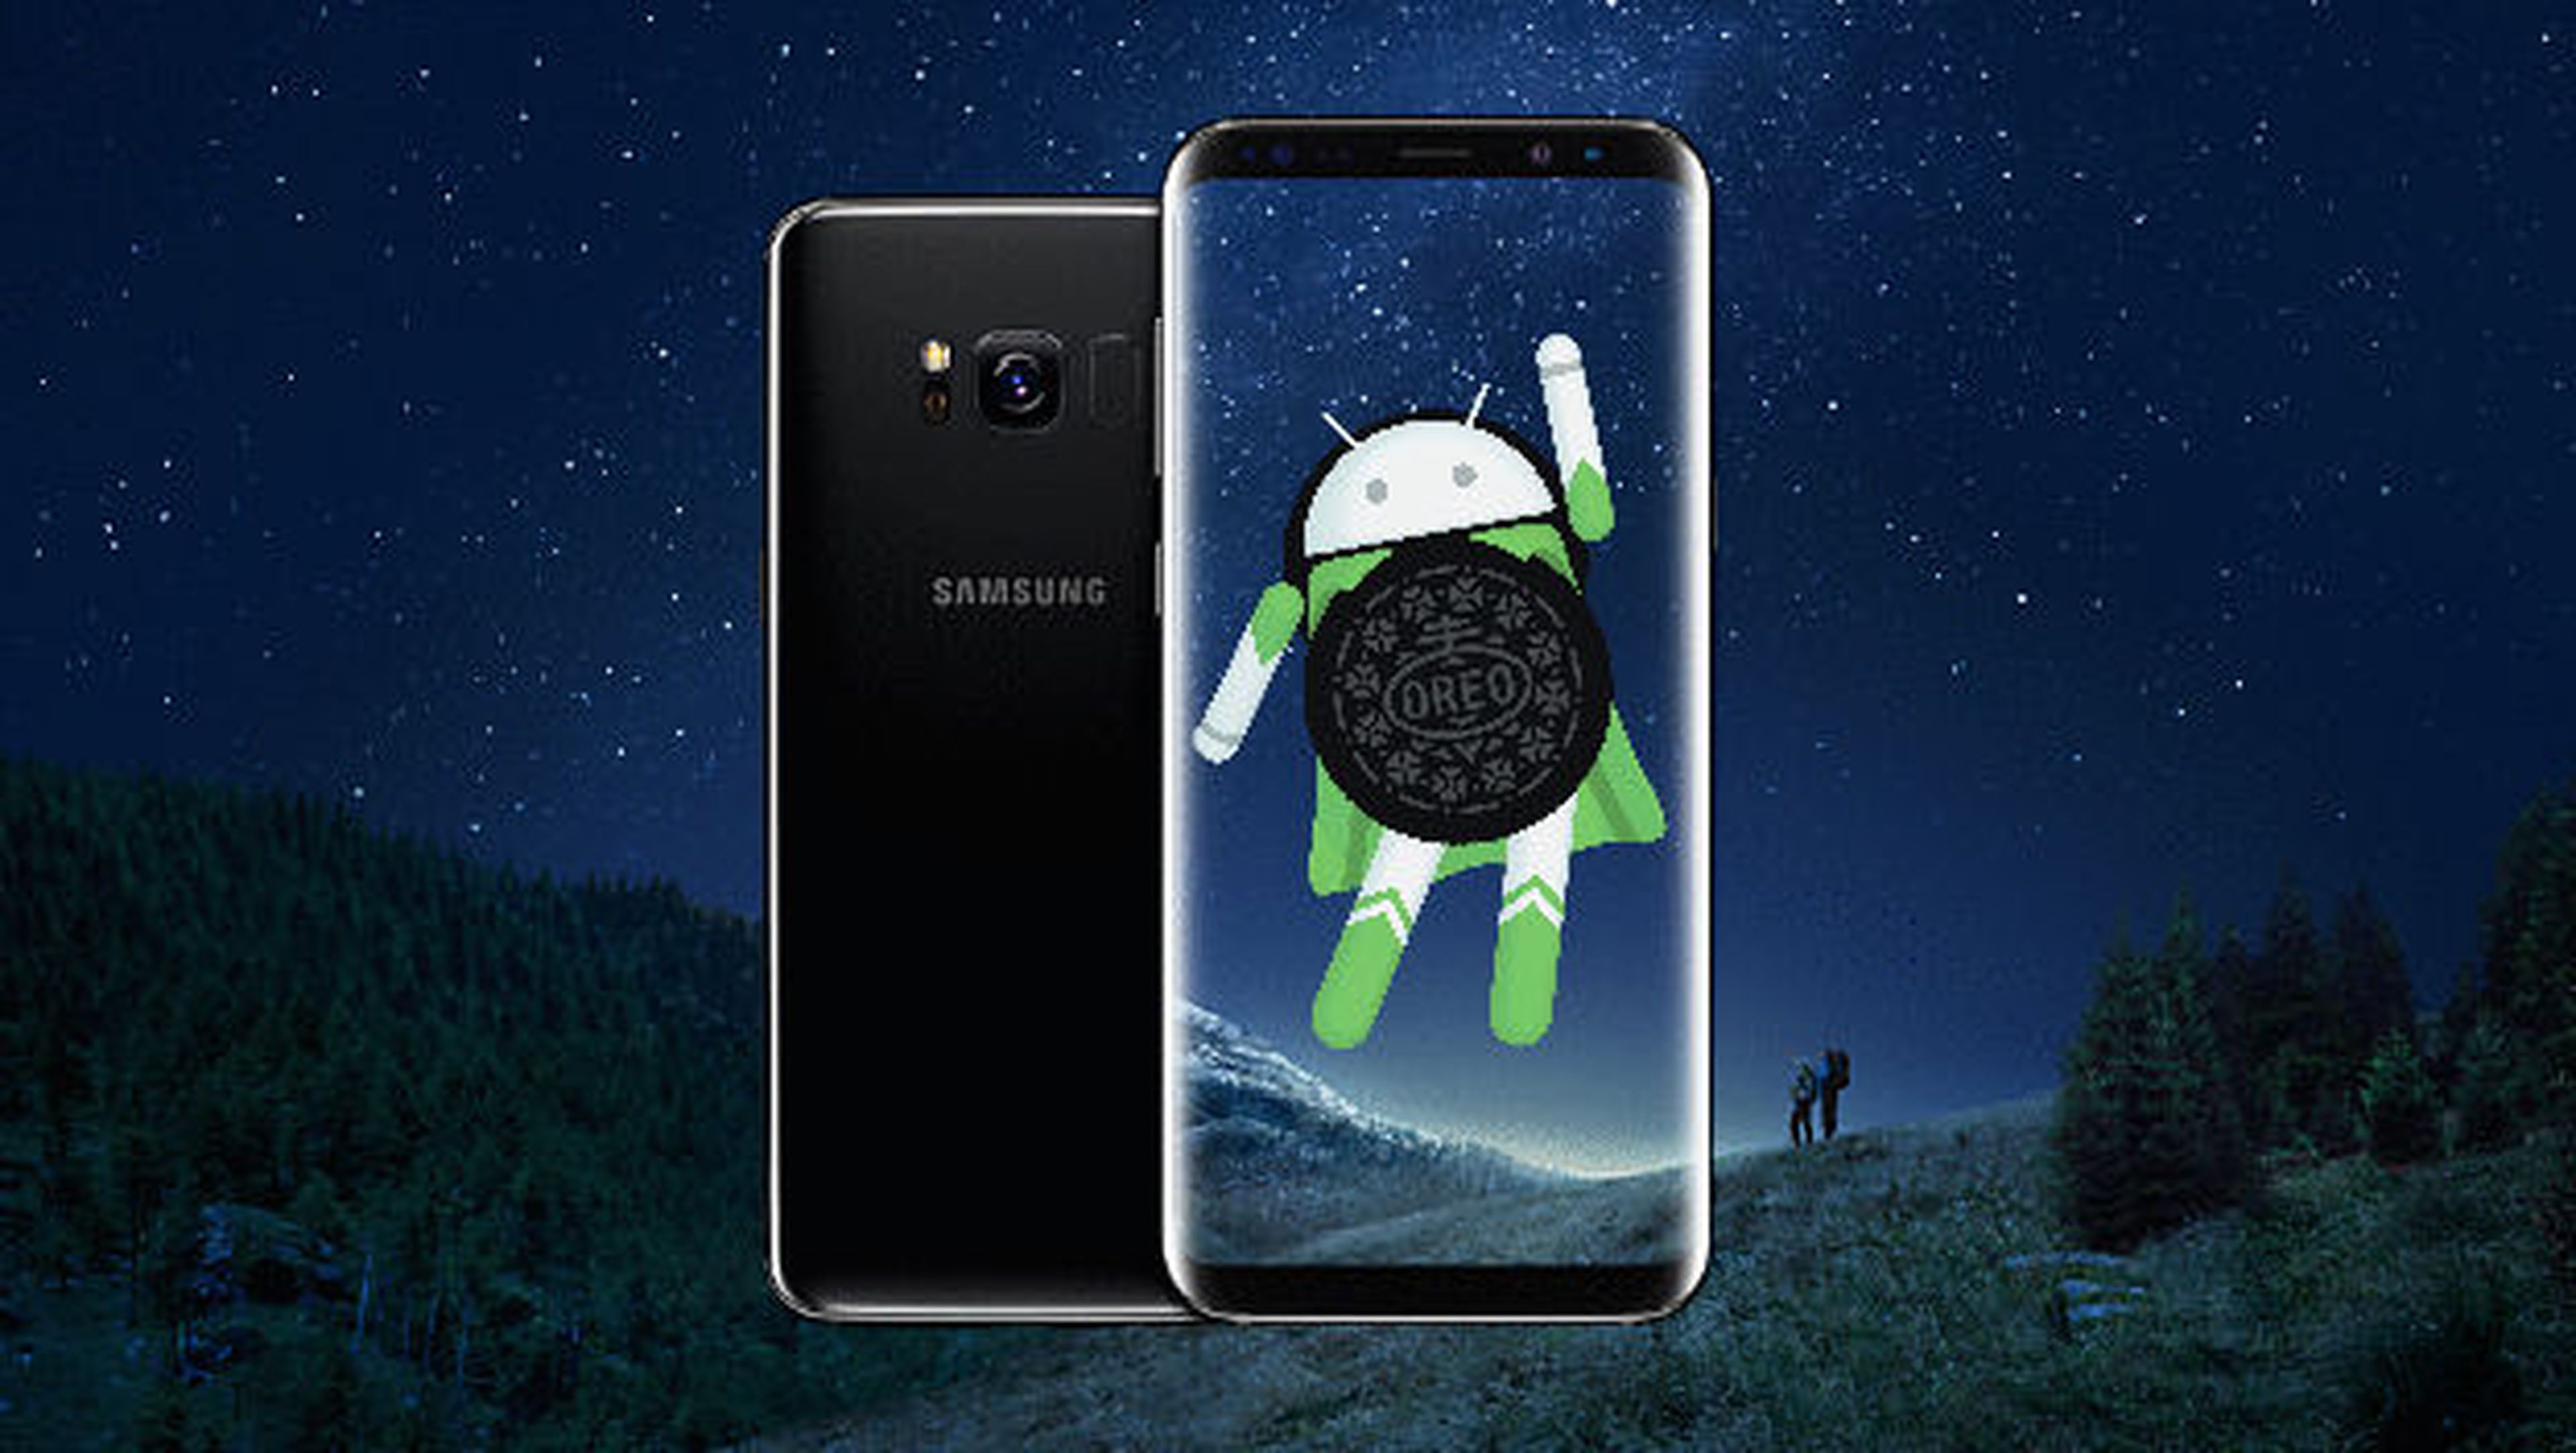 Los móviles Samsung recibirán la actualización oficial a Android 8.0 Oreo en 2018.